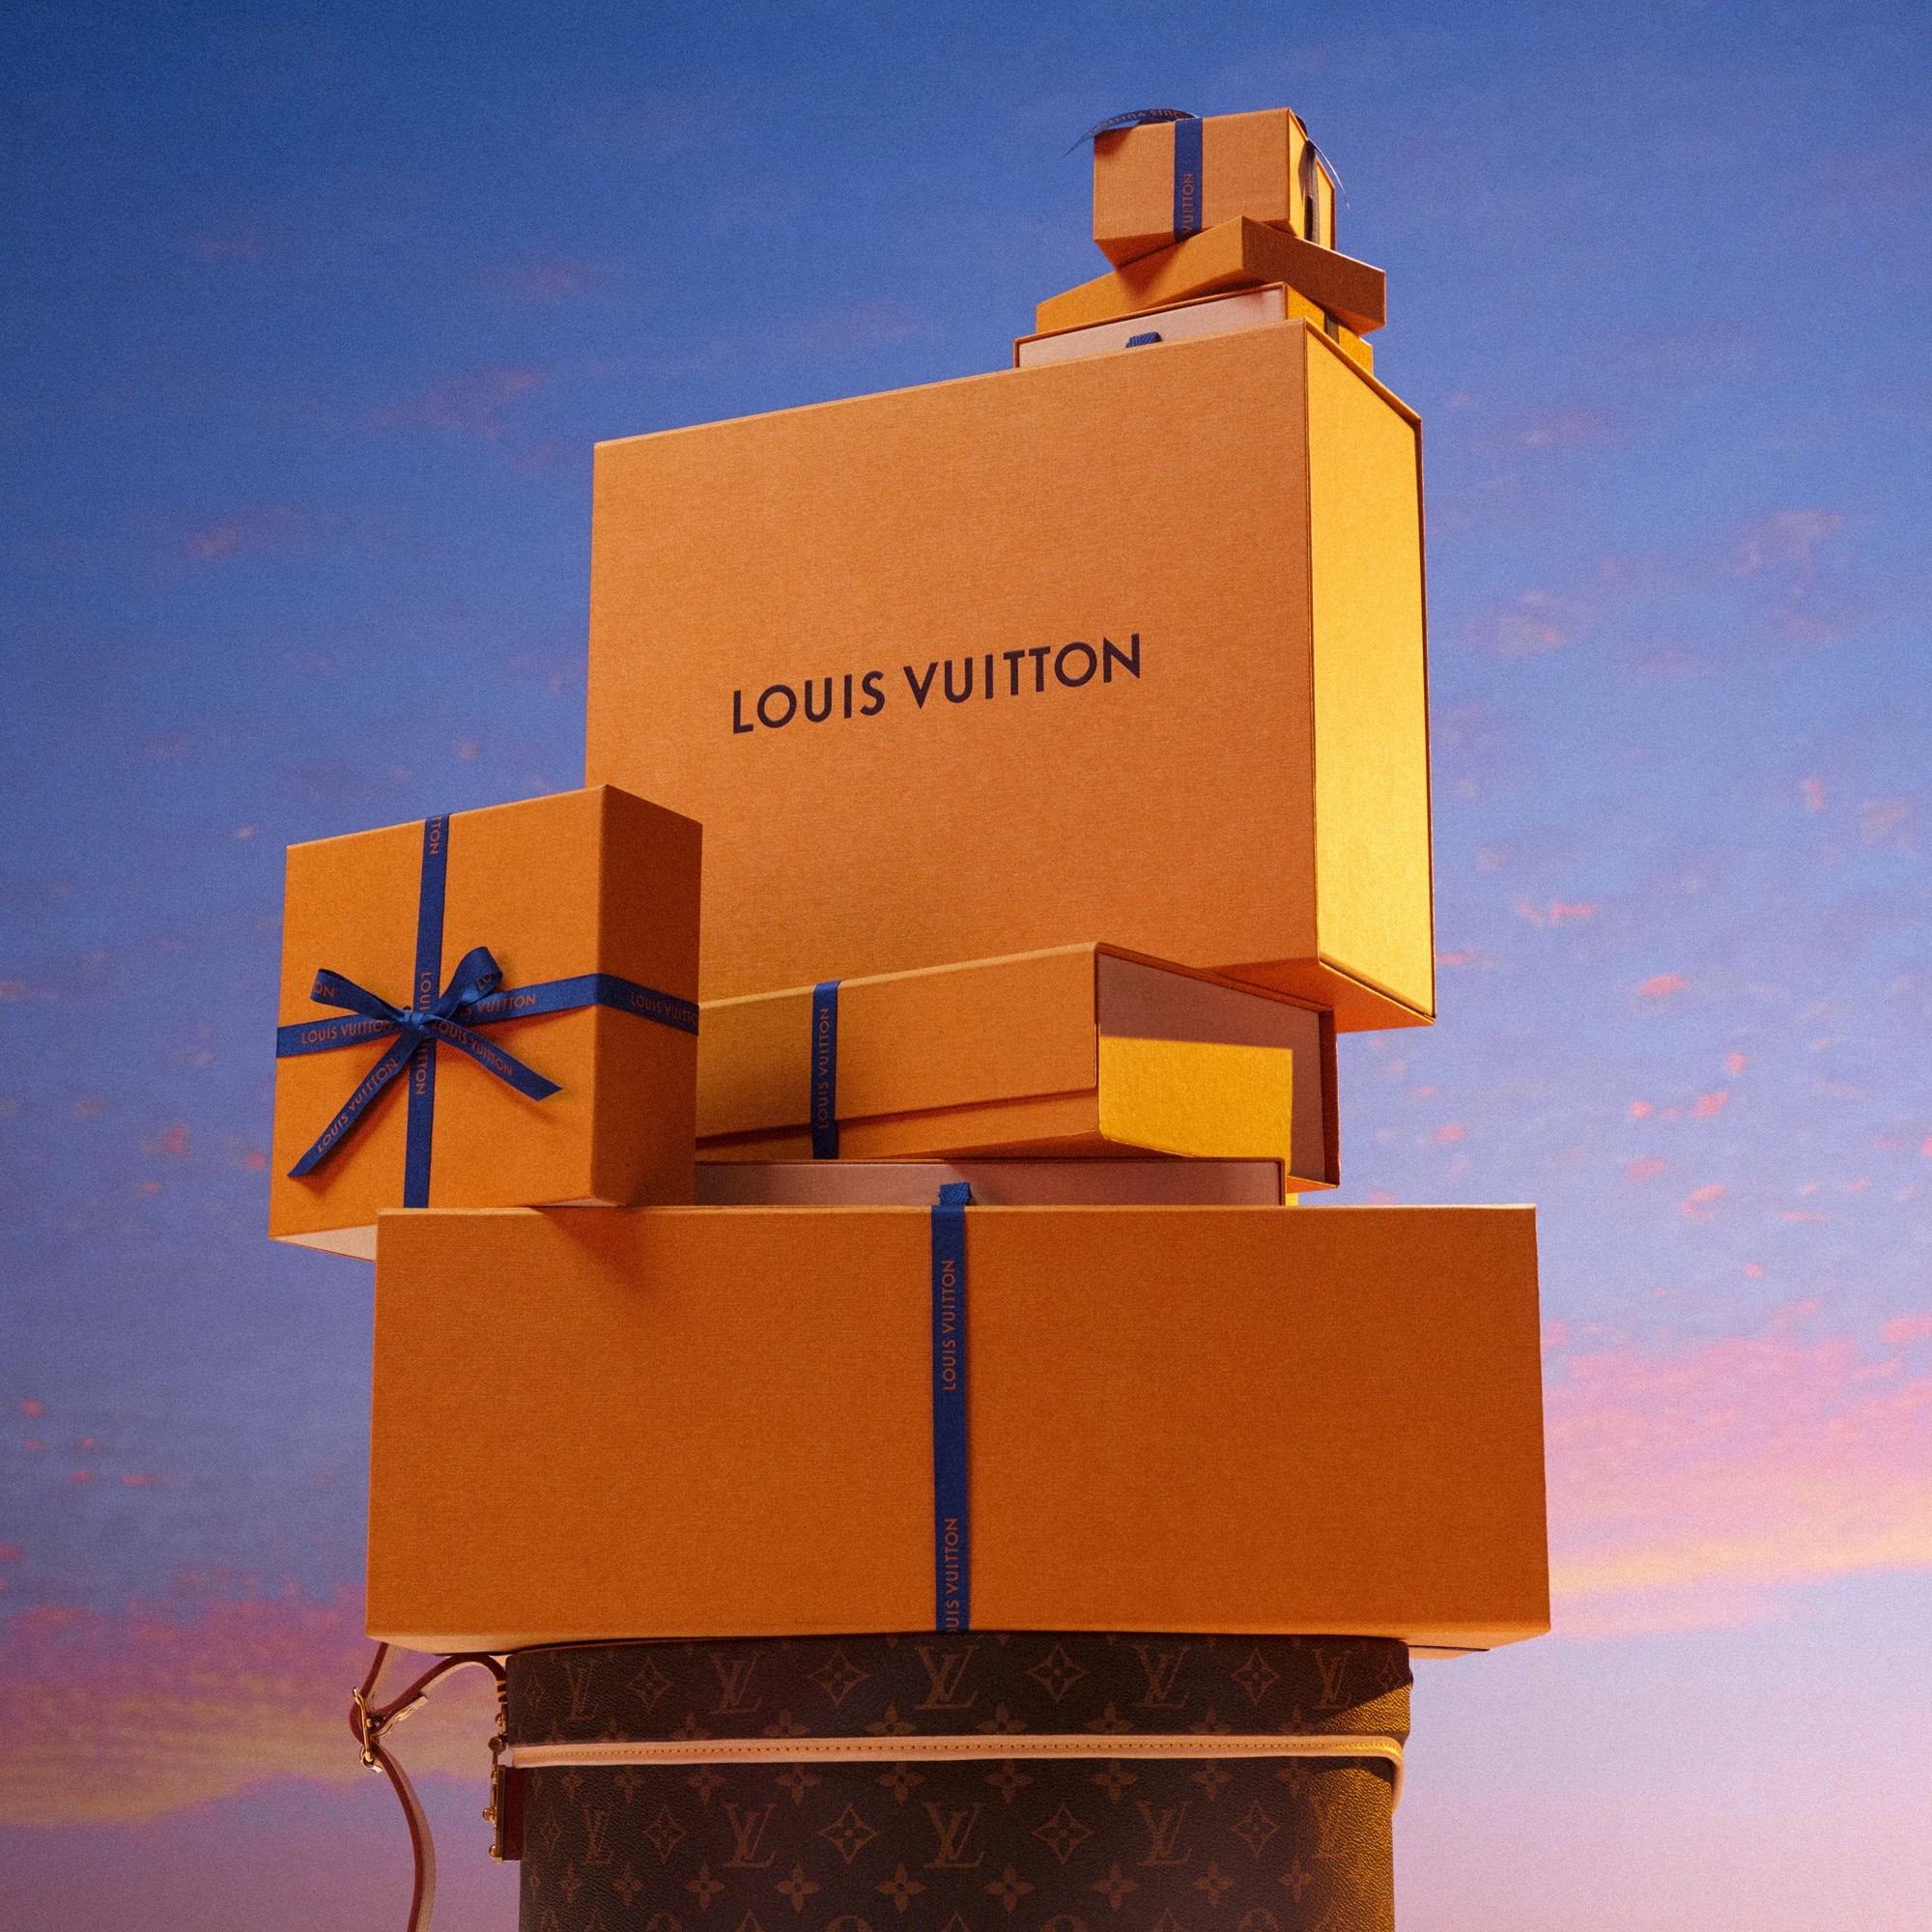 Louis Vuitton dévoile un nouveau packaging - LVMH